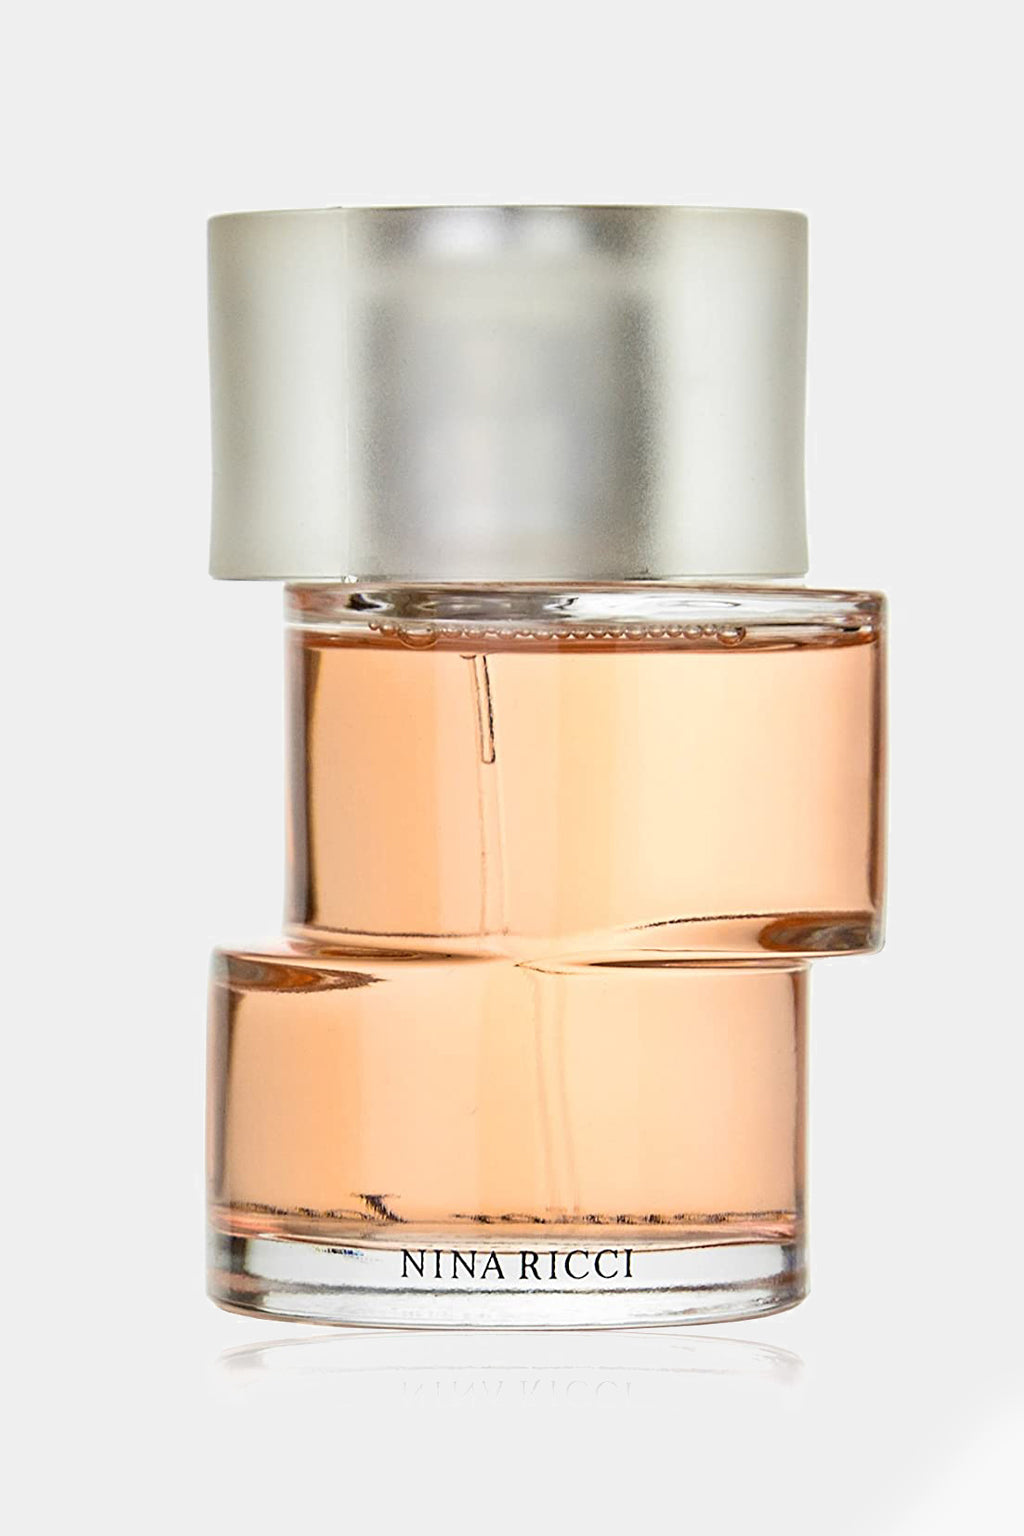 Nina Ricci - Premier Jour Eau de Perfume